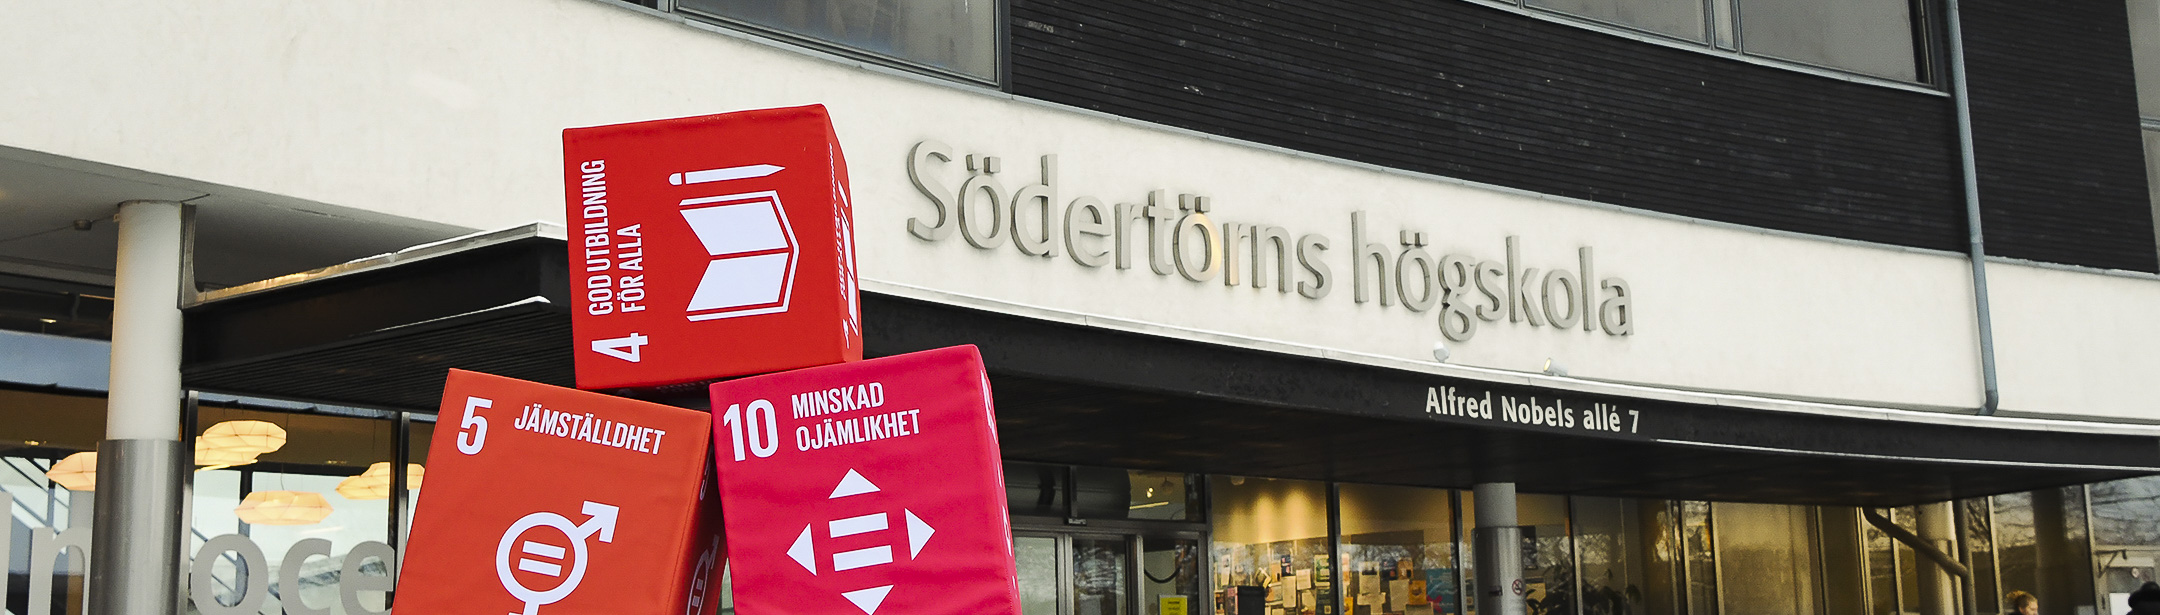 Röda boxar med FN:s Globala mål framför entrén på Södertörns högskola